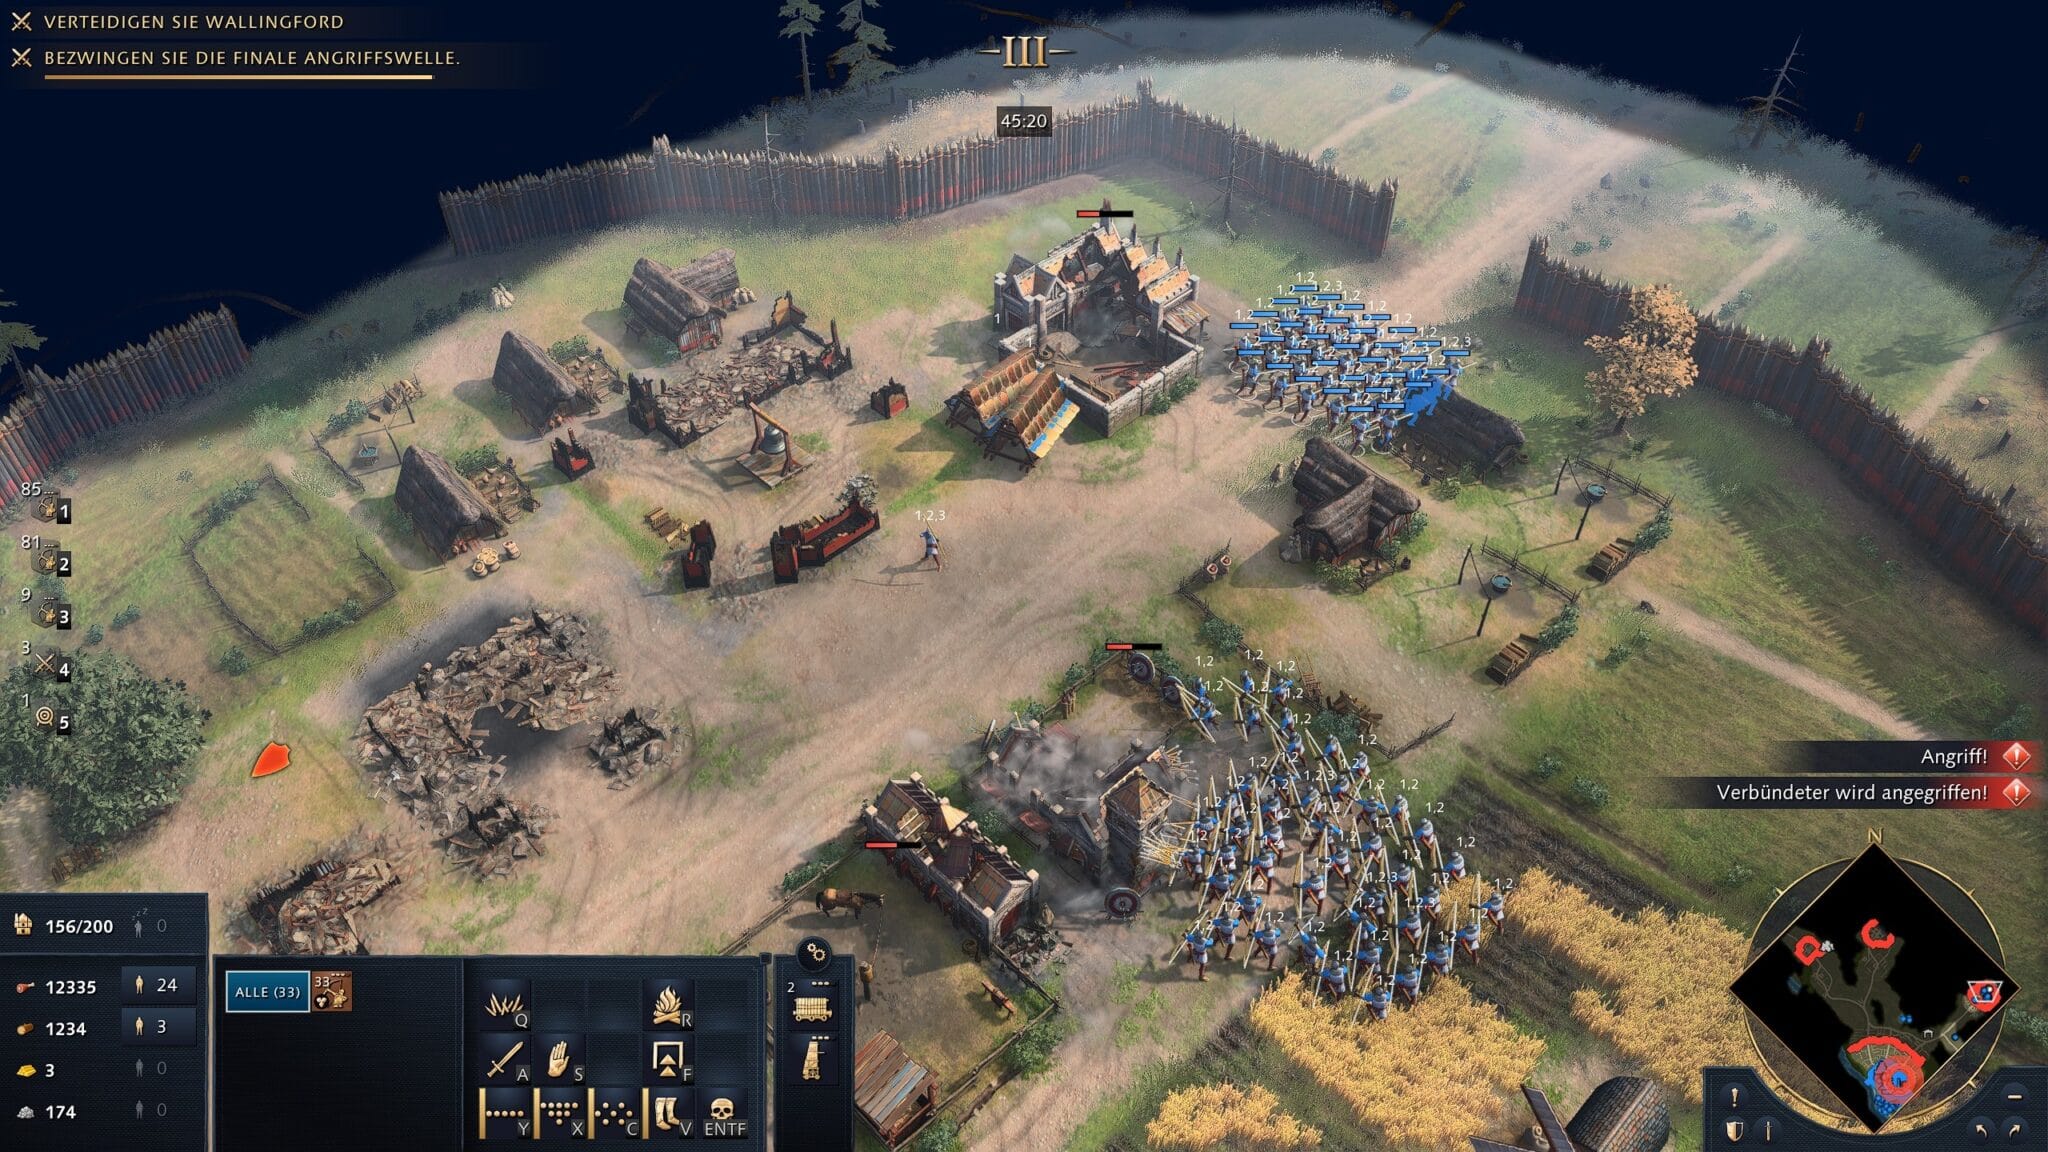 Voor single-player spelers, biedt Age of Empires 4 momenteel in principe alleen de campagne. Hier schakelden we de vijandelijke zwaar verdedigde kampen uit, hoewel we eigenlijk alleen de stad moesten verdedigen.